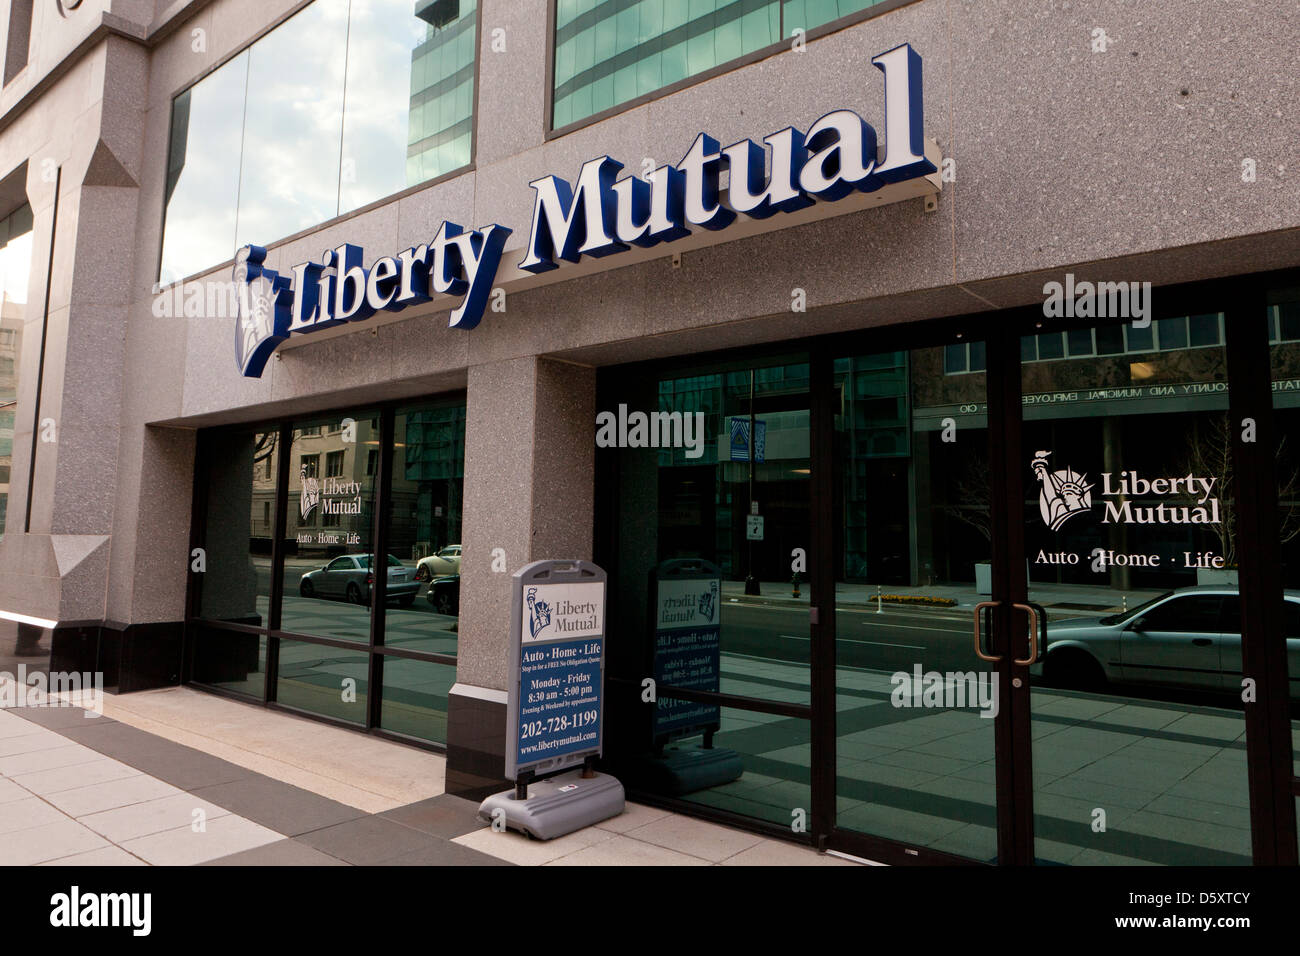 Liberty Mutual storefront Stock Photo